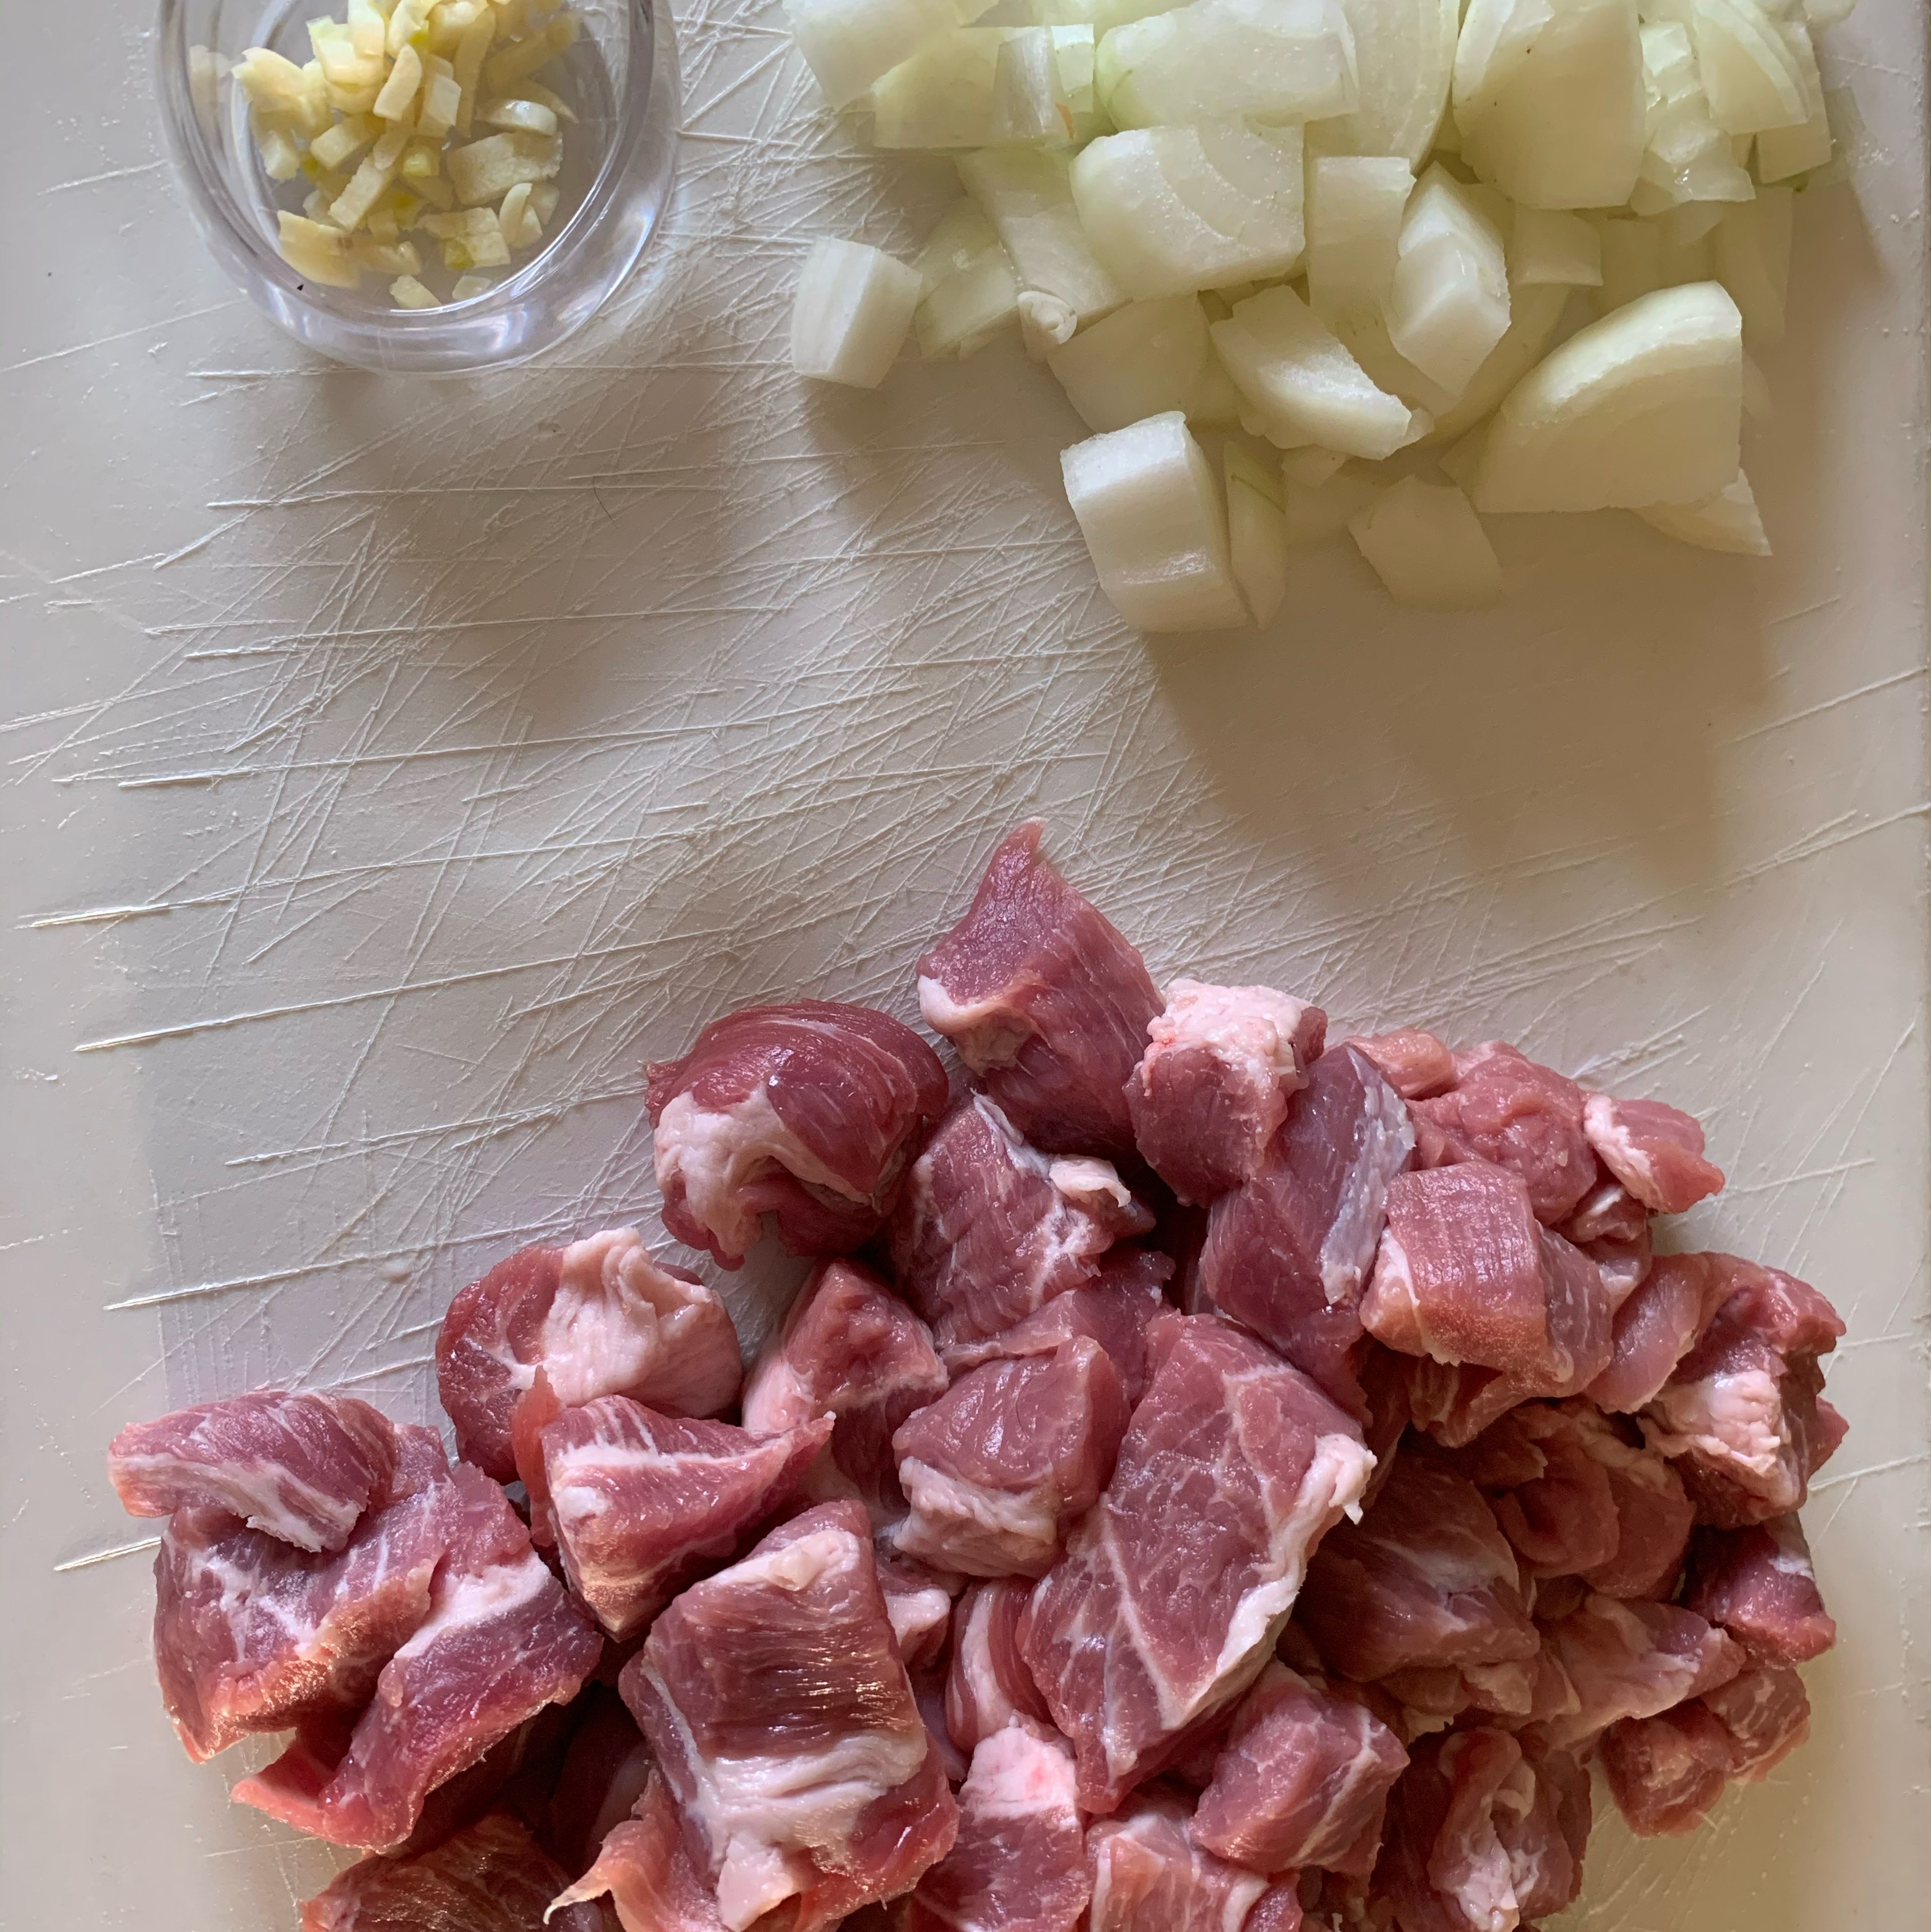 Zuerst die Zwiebeln würfeln (die Stücke müssen nicht zu fein sein), danach den Knoblauch in kleine Stücke schneiden. Das Schweinefleisch in ca 3 cm große Stücke schneiden.